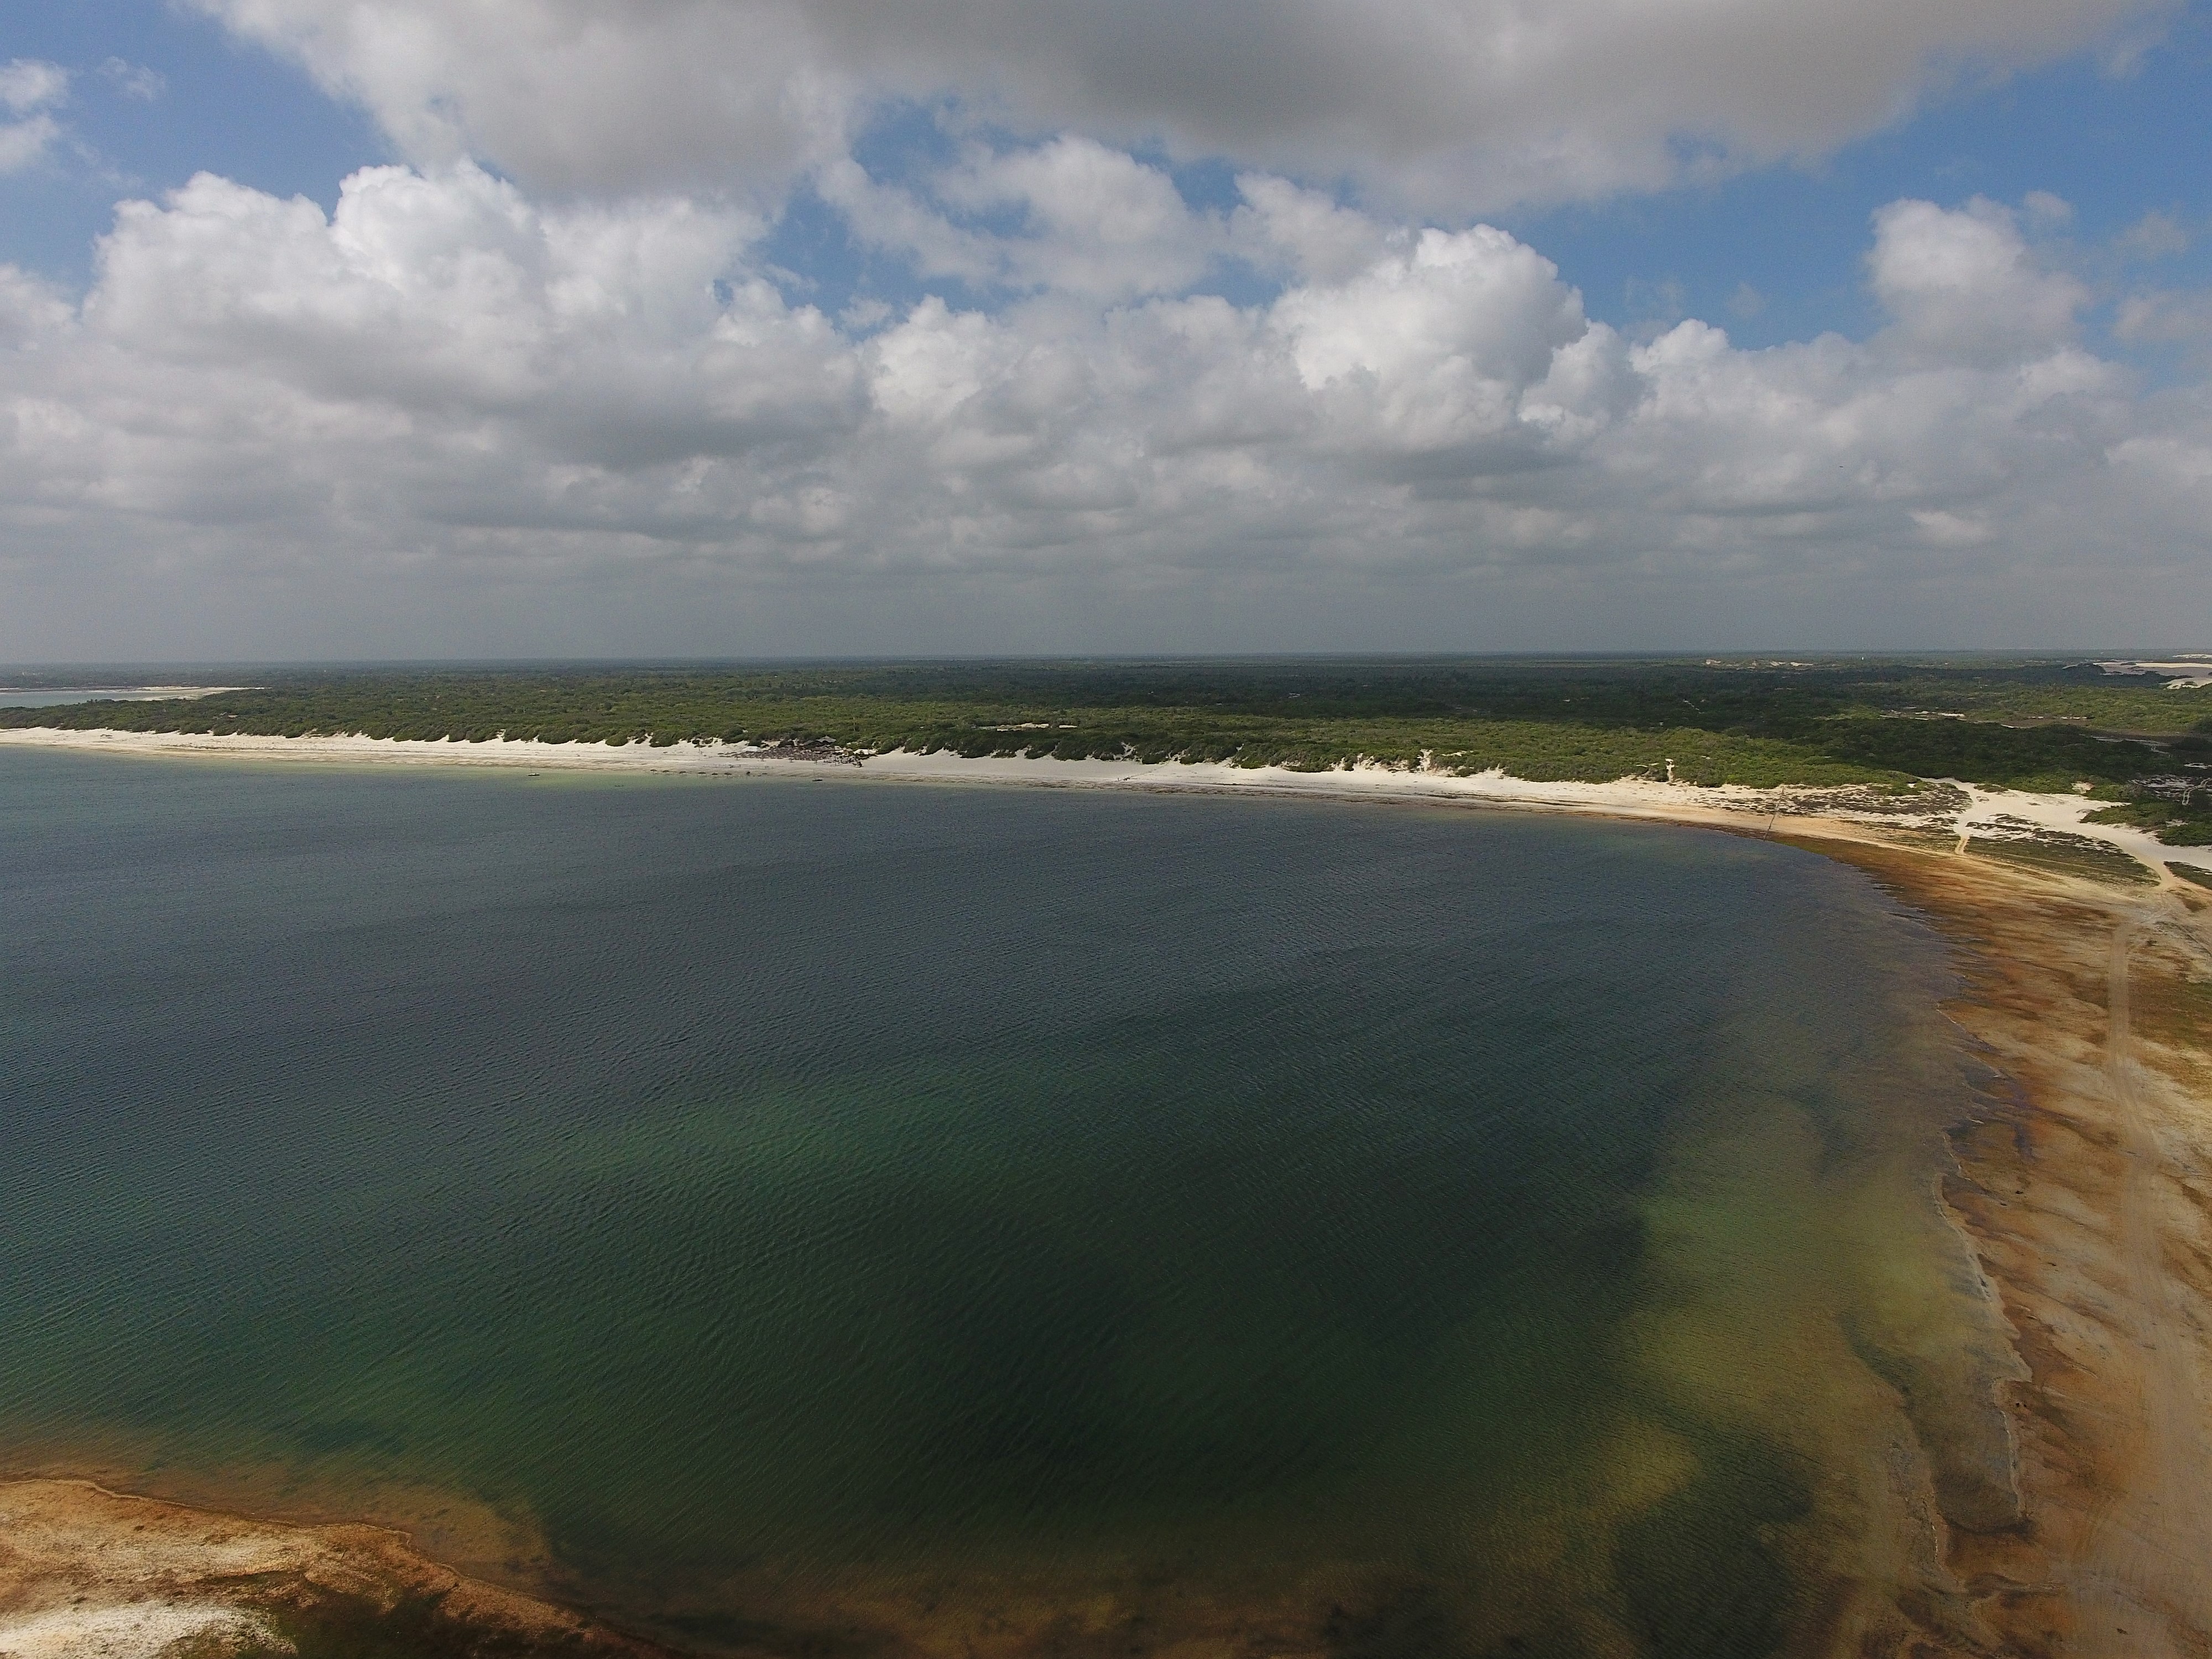 Fotografia da Lagoa do Paraíso tirada de cima. As águas tem um tom azul escuro, quase esverdeado. O céu está coberto com nuvens na cor branca e cinza